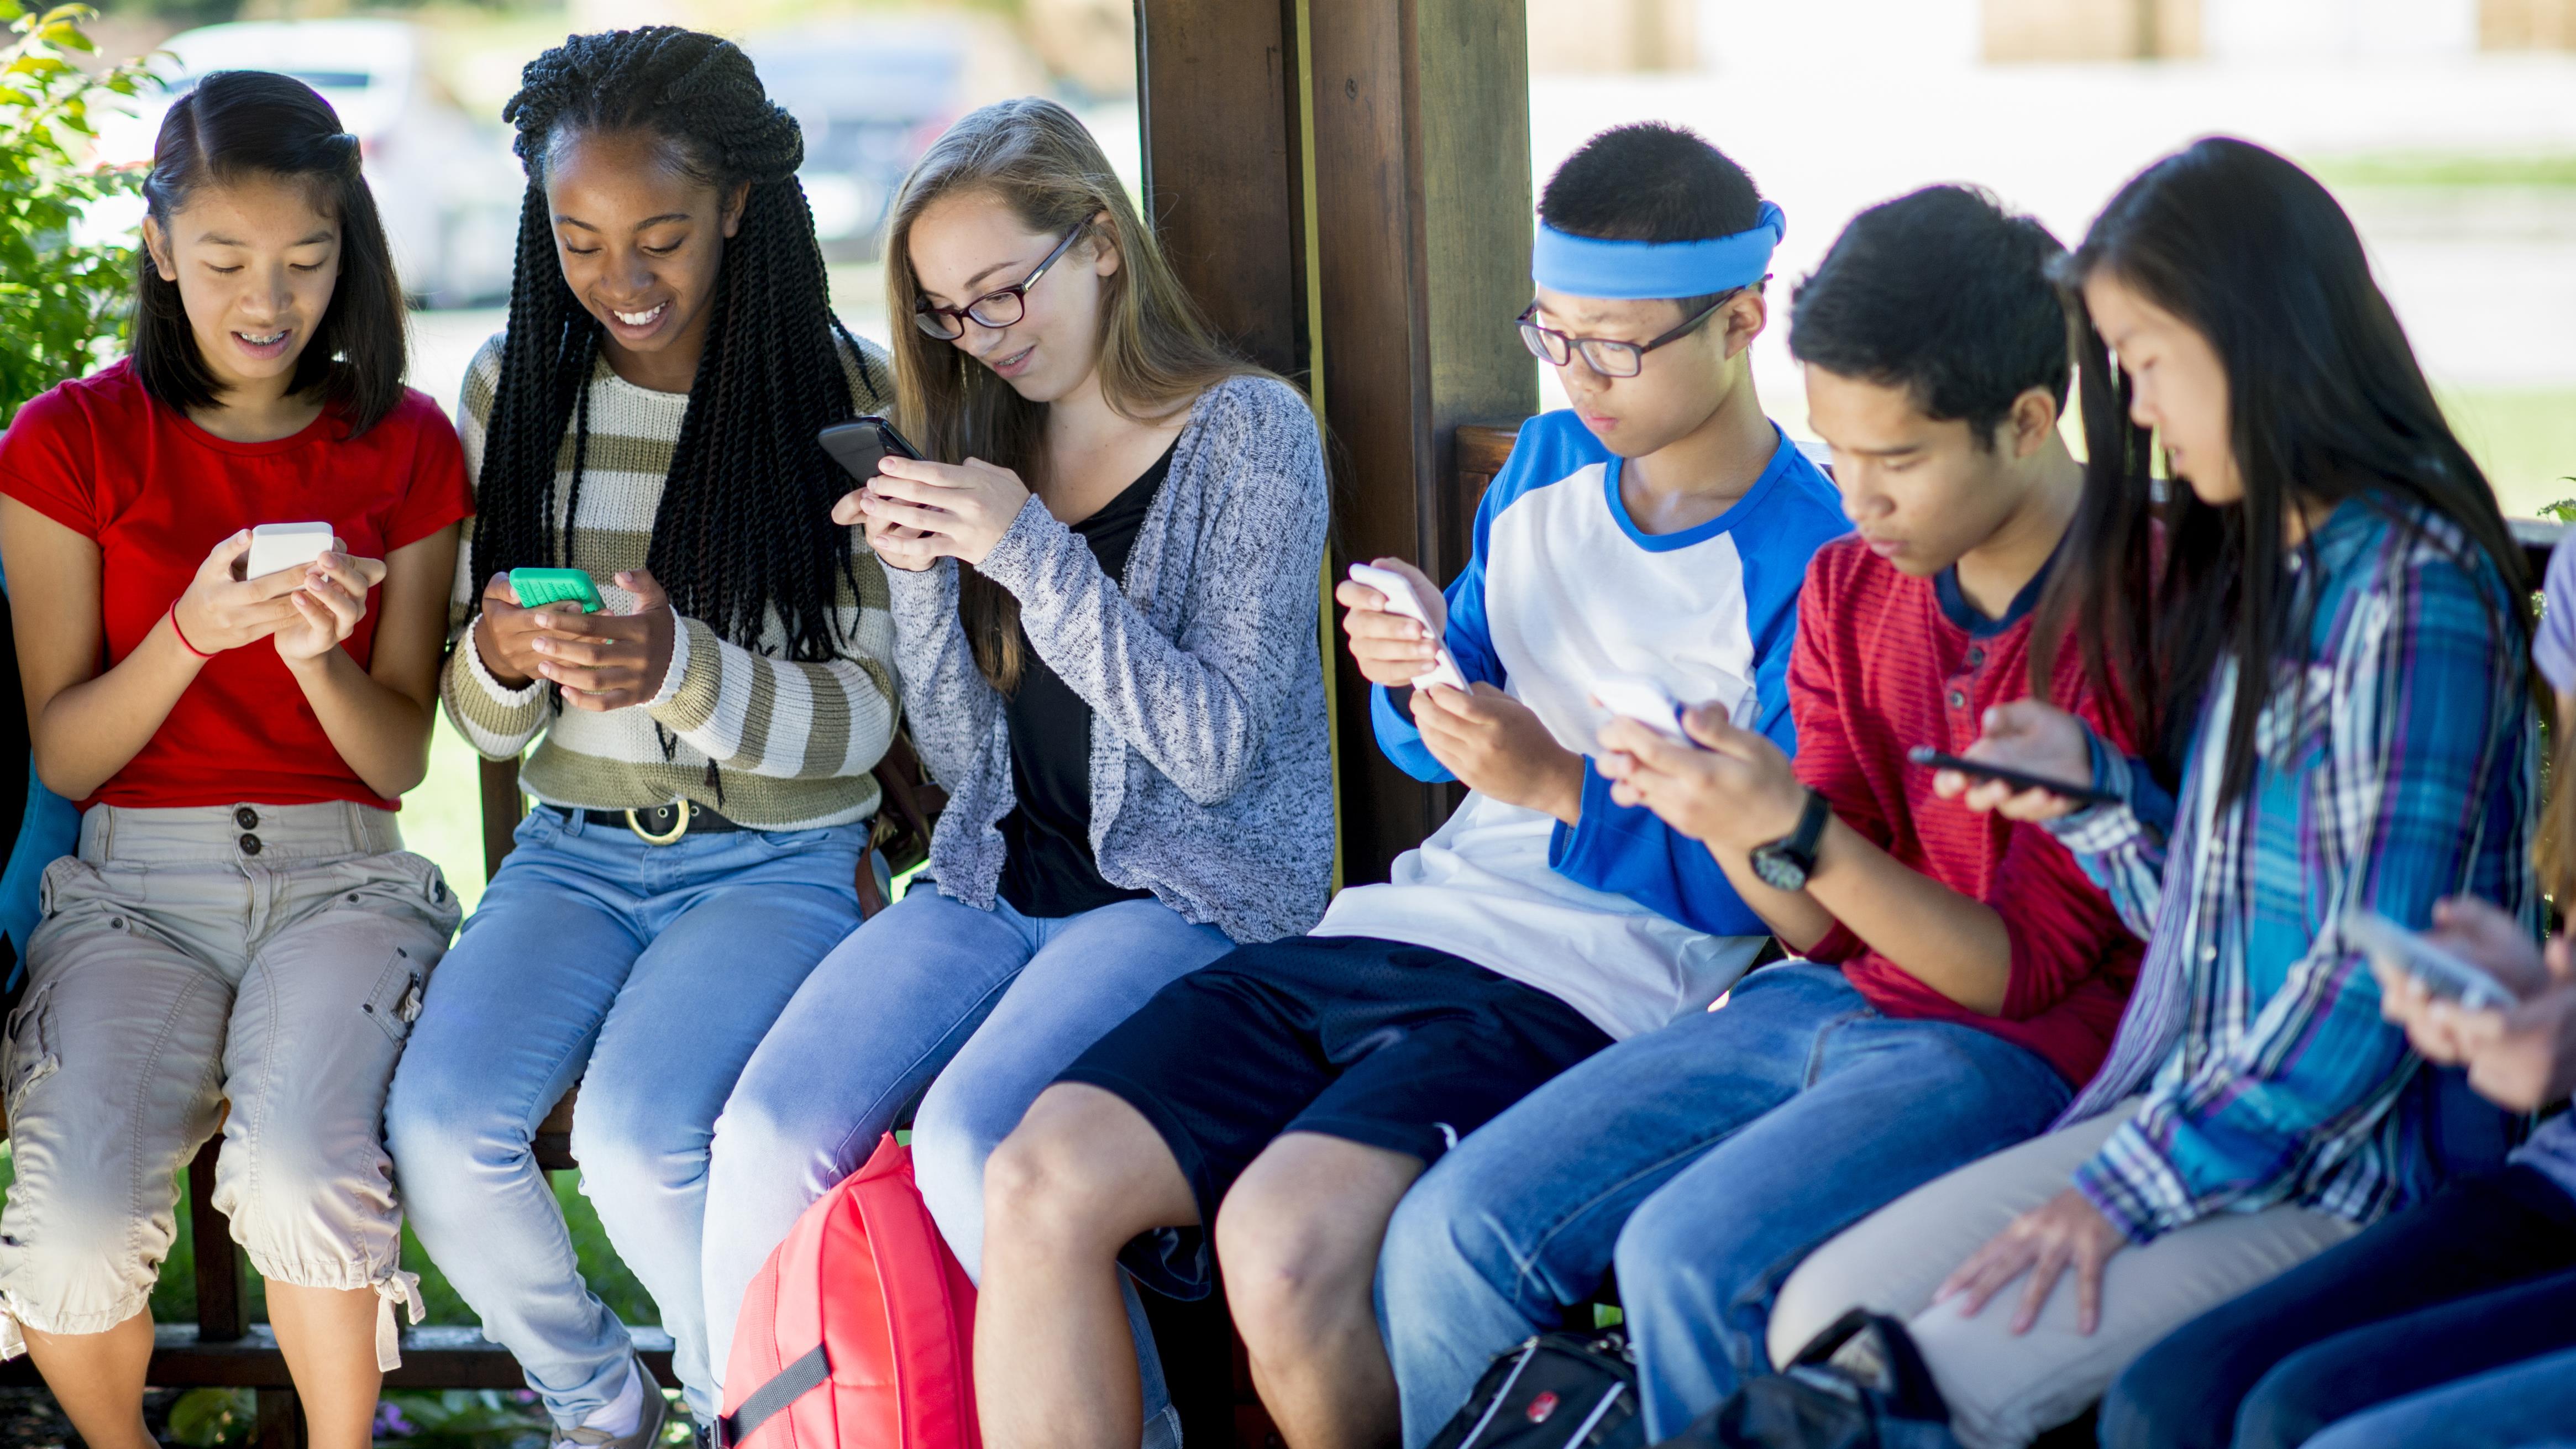 The teenager s world. Молодежь с гаджетами. Современная молодежь. Молодежь в телефонах. Подросток с мобильником.